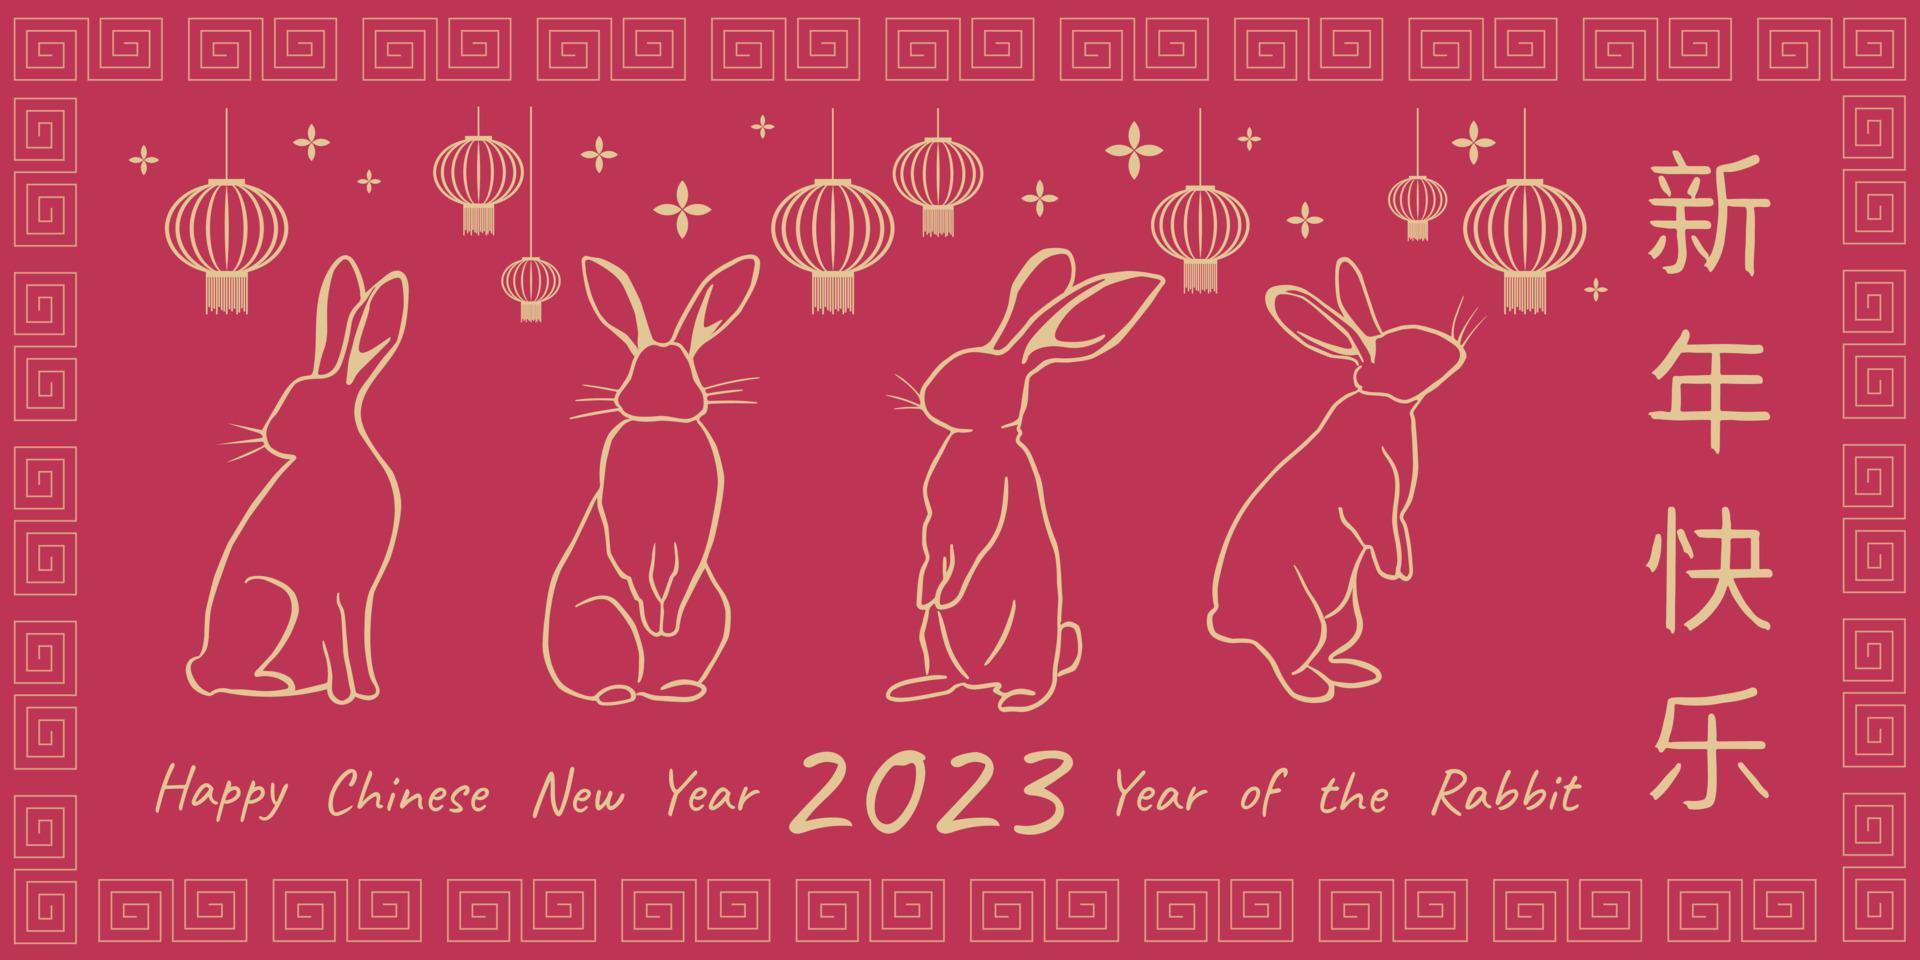 ano novo chinês 2023 ano do coelho. cartão com símbolo do Zodíaco tradicional - coelhos. descreve coelhos dourados com lanternas chinesas no fundo magenta viva com saudações chinesas. vetor